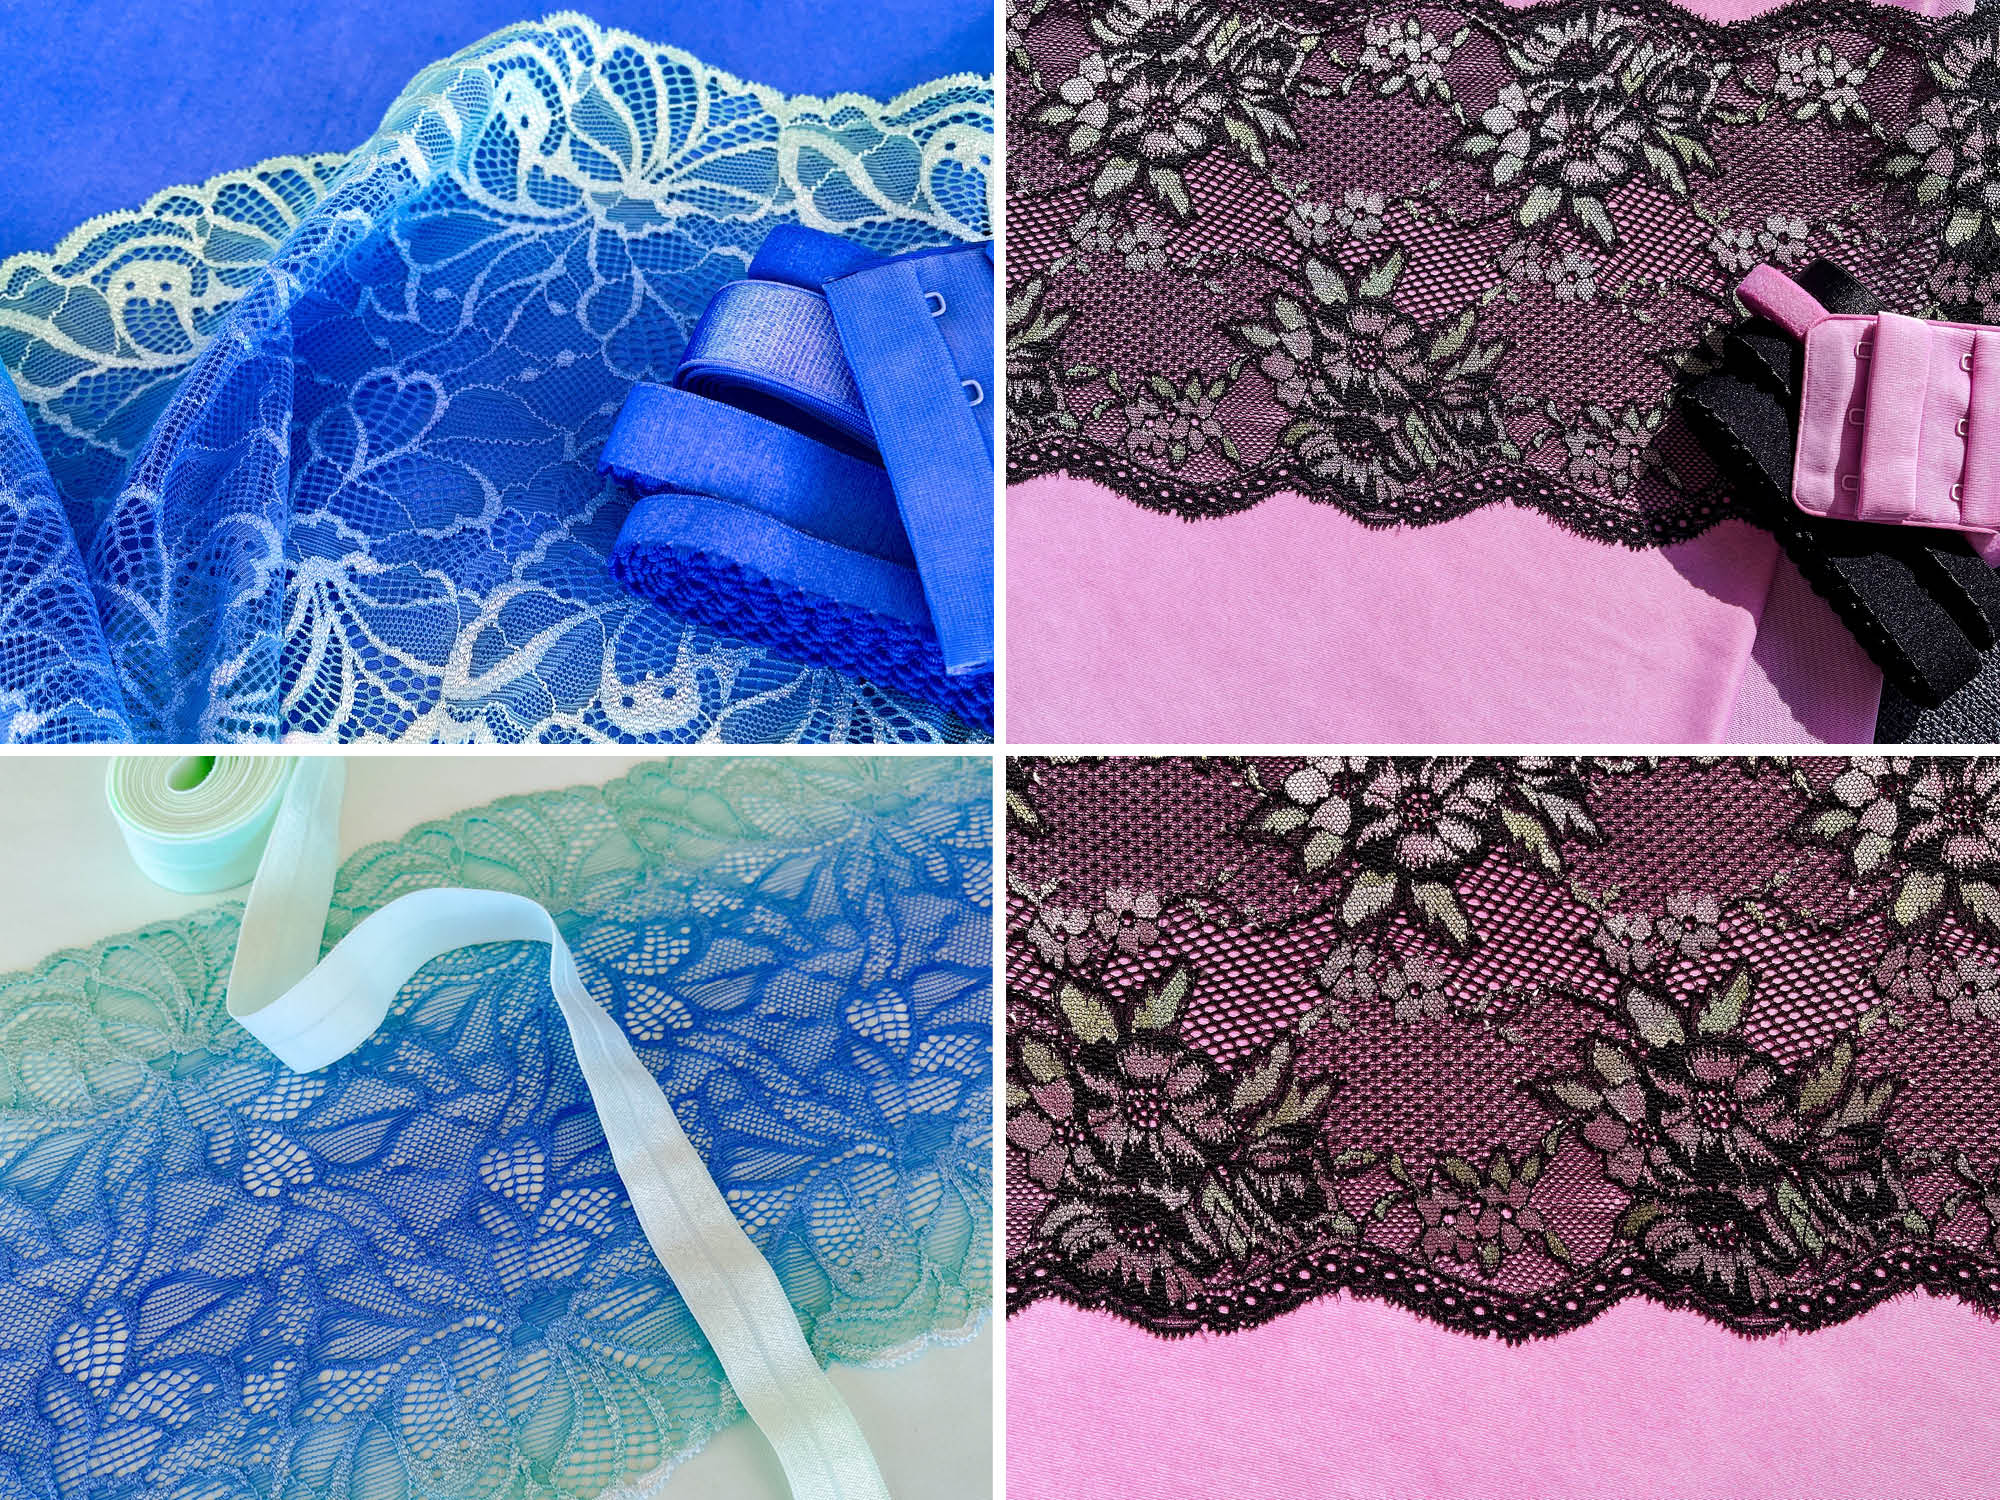 How to adjust an underwear pattern, featuring the Radcliffe Undies!